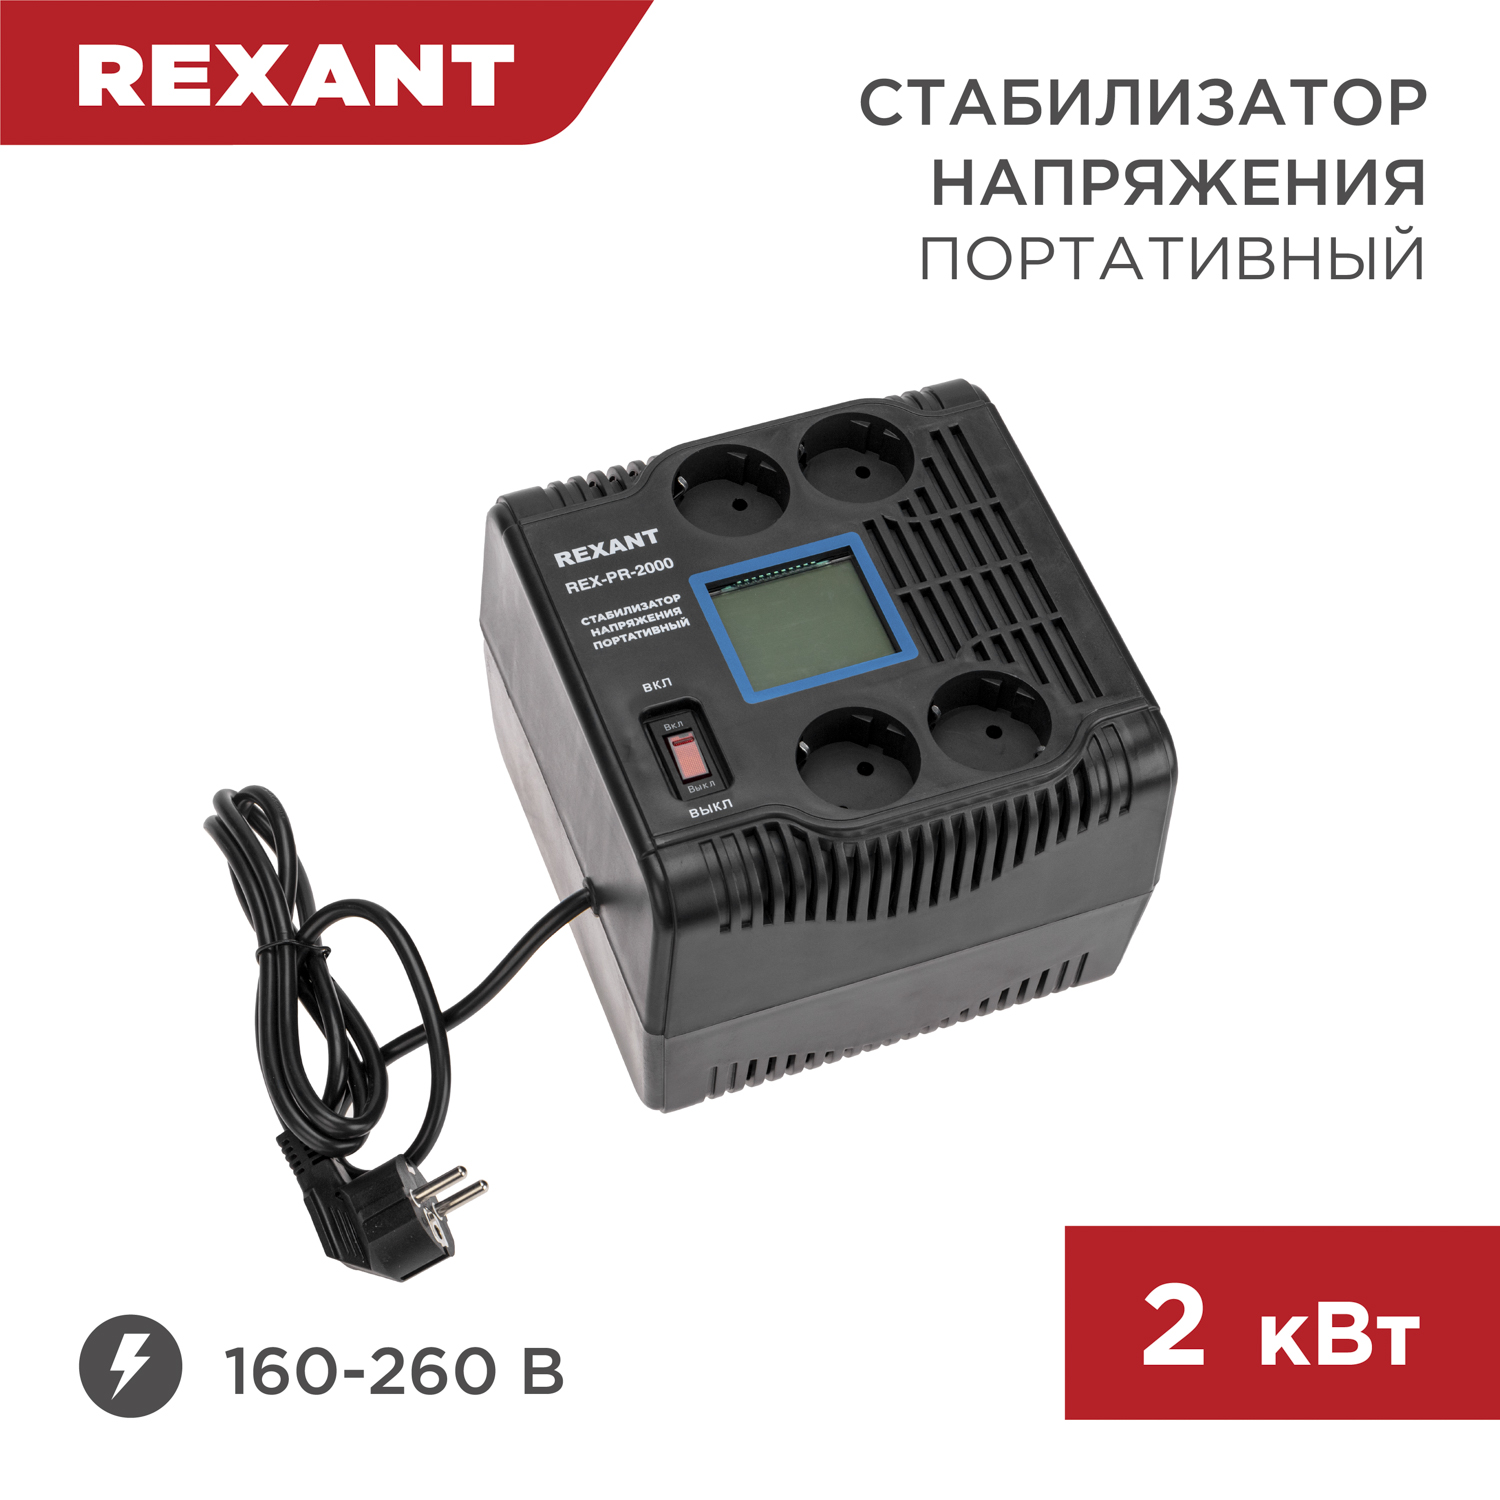 Стабилизатор напряжения портативный REXANT REX-PR-2000 11-5032 однофазный стабилизатор напряжения вольт engineering